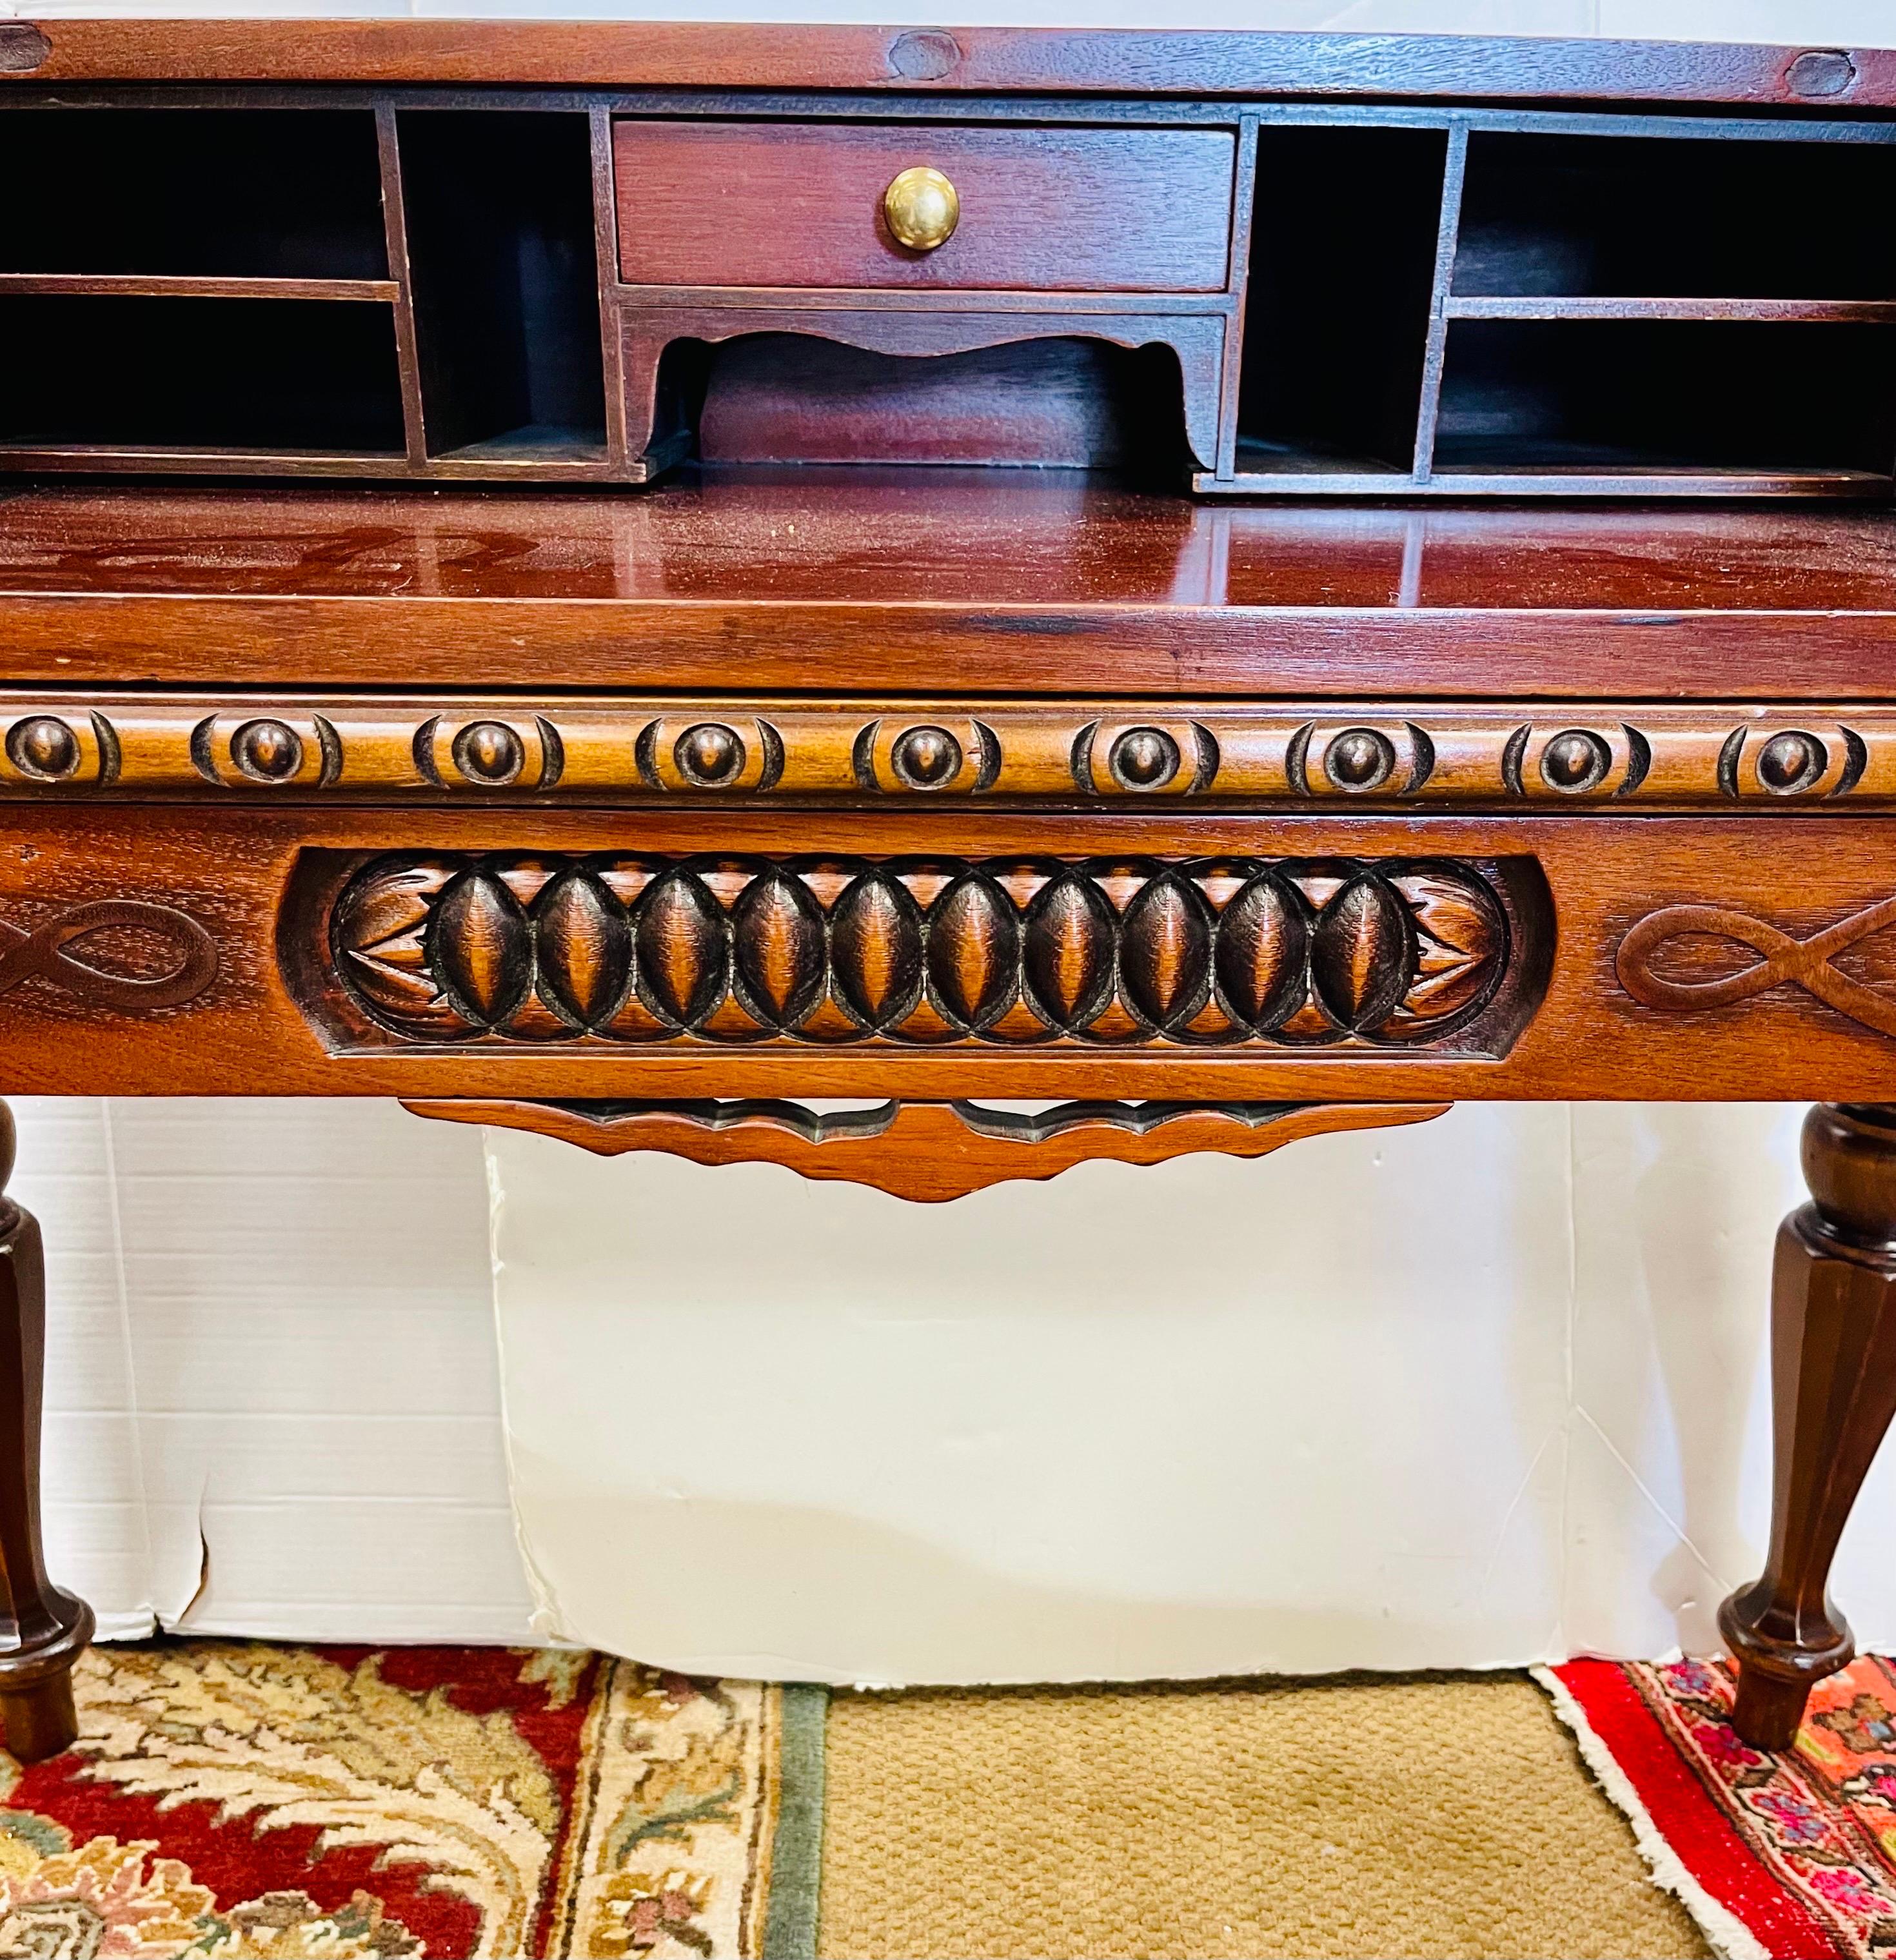 Wunderschöner antiker, stark geschnitzter Mahagoni-Schreibtisch aus dem späten 19. Jahrhundert. Beachten Sie die vielen Details und Schnitzereien. Alle handgeschnitzt und verfügt über eine gleitende Schreibservice, die herausgezogen wird. Ein